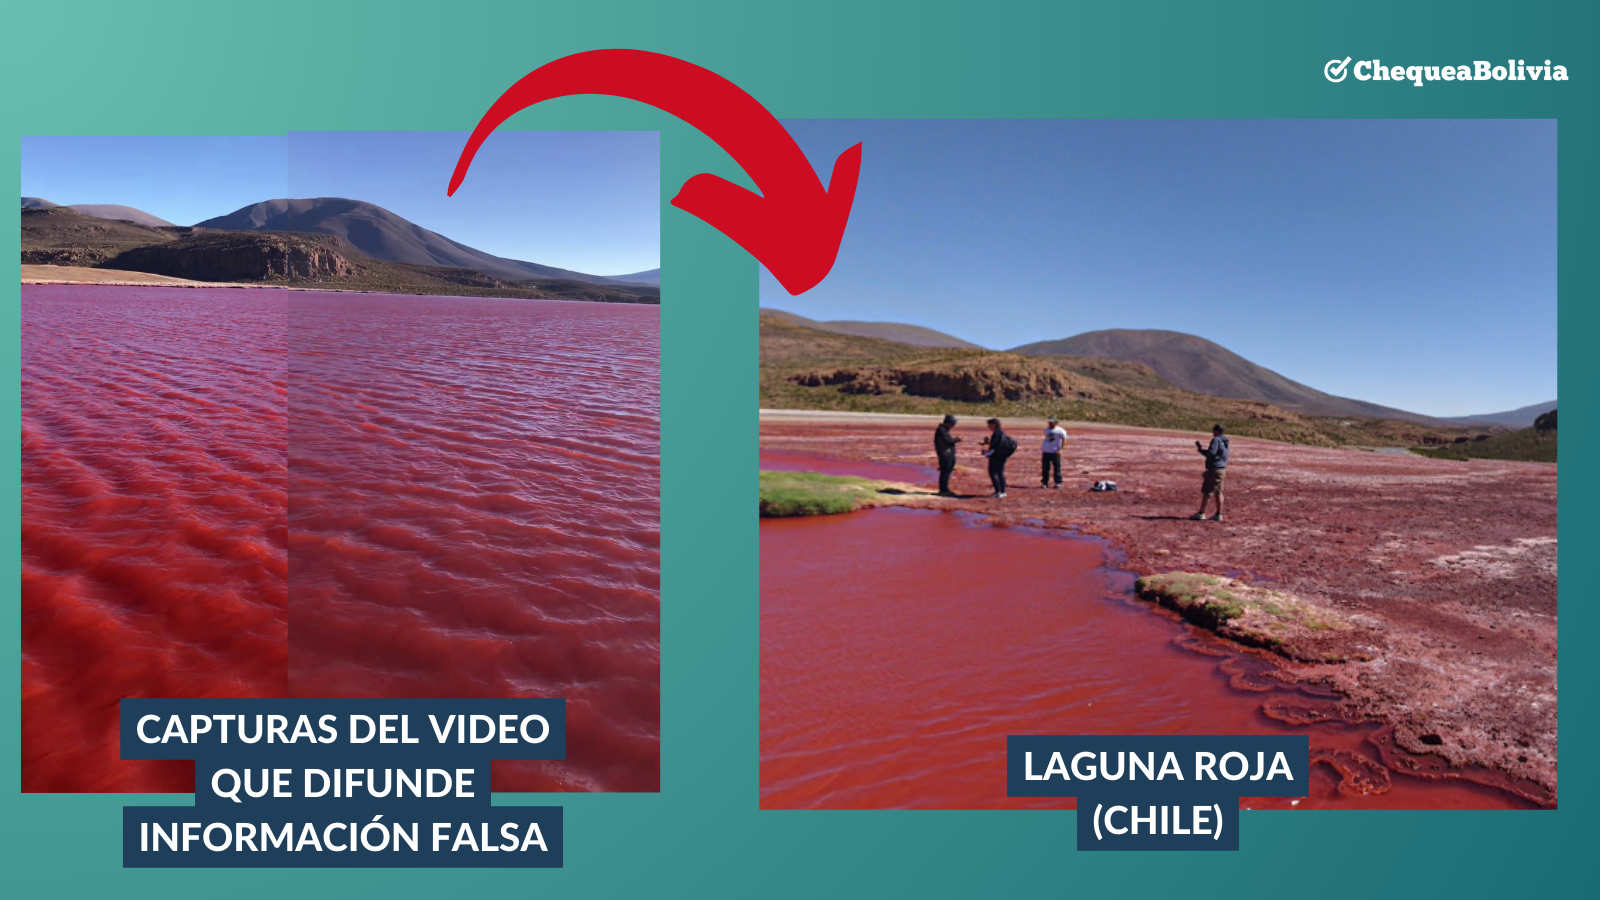 Comparación entre la grabación del video y los registros disponibles en Google Maps sobre la Laguna Roja en Chile.